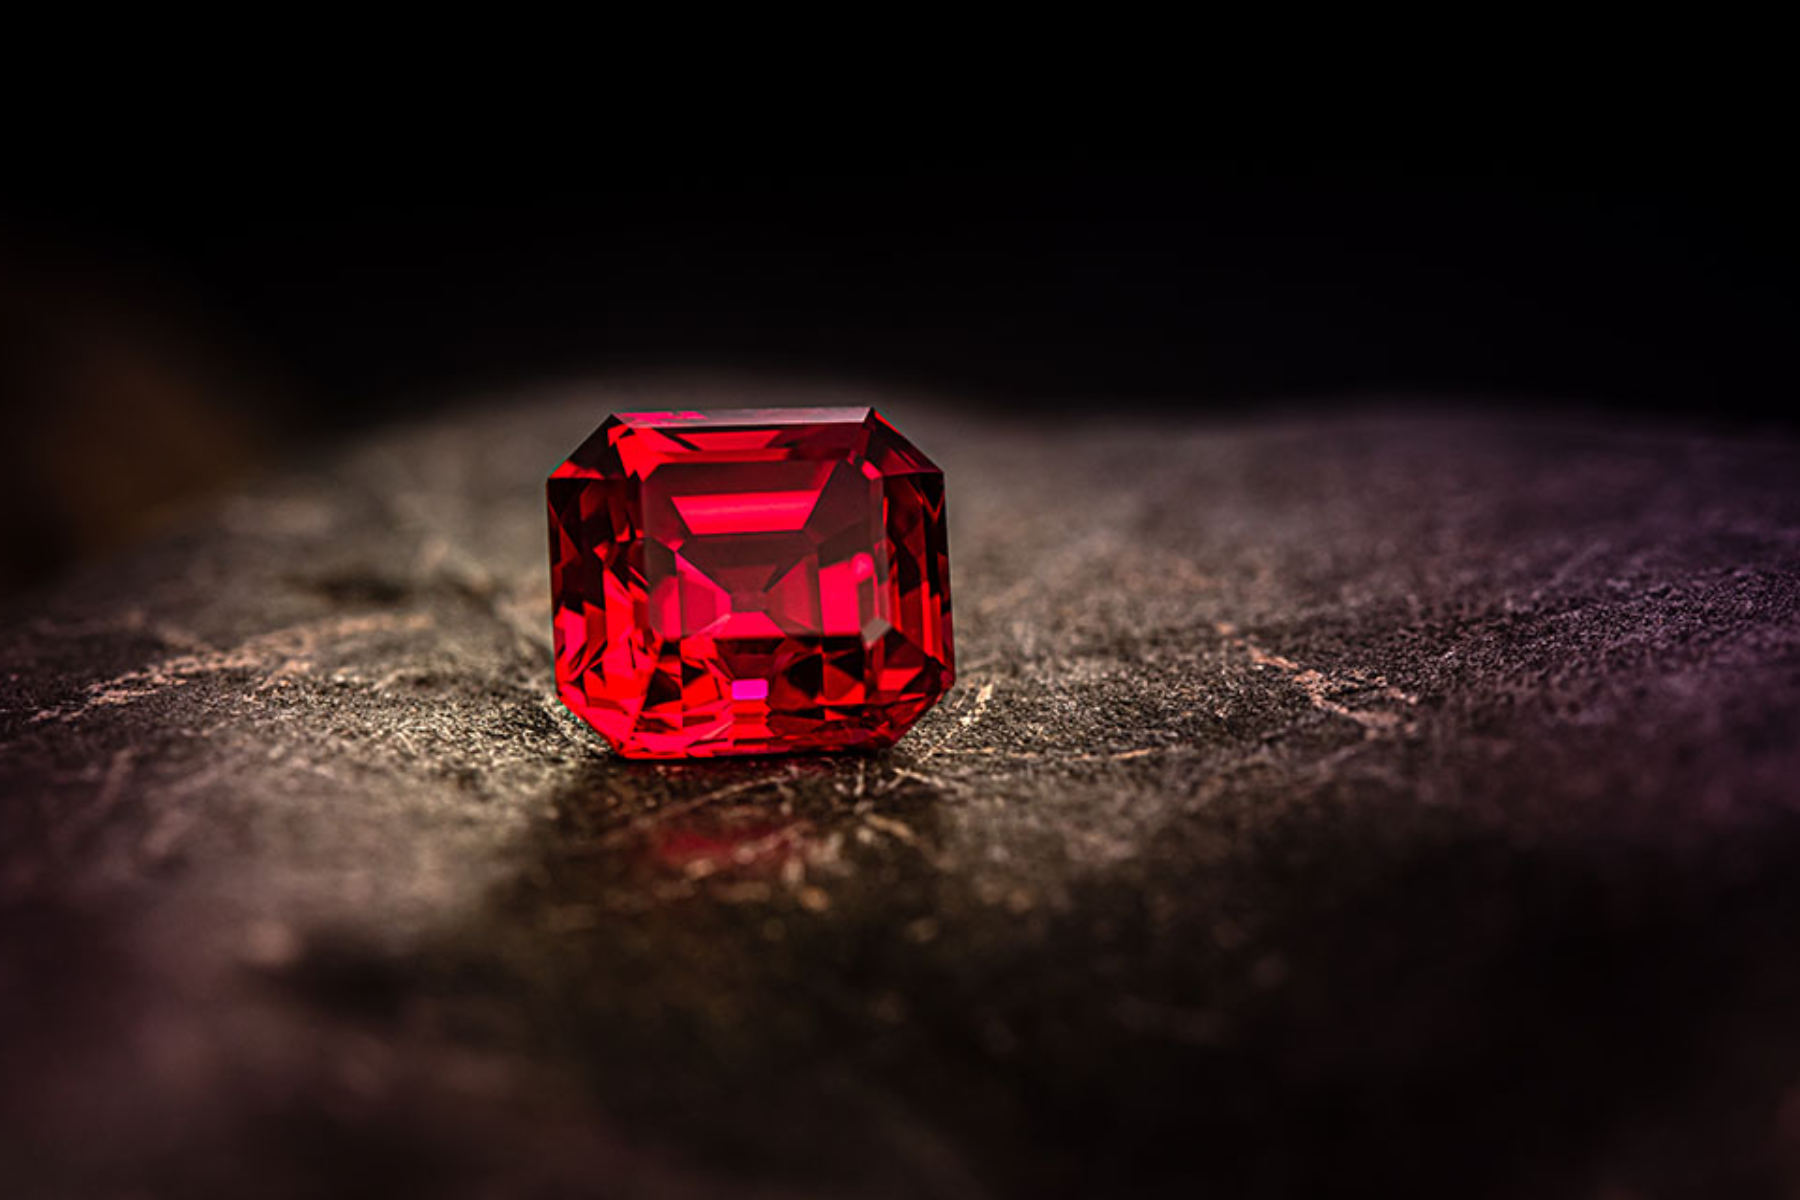 An octagonal ruby in a dark 